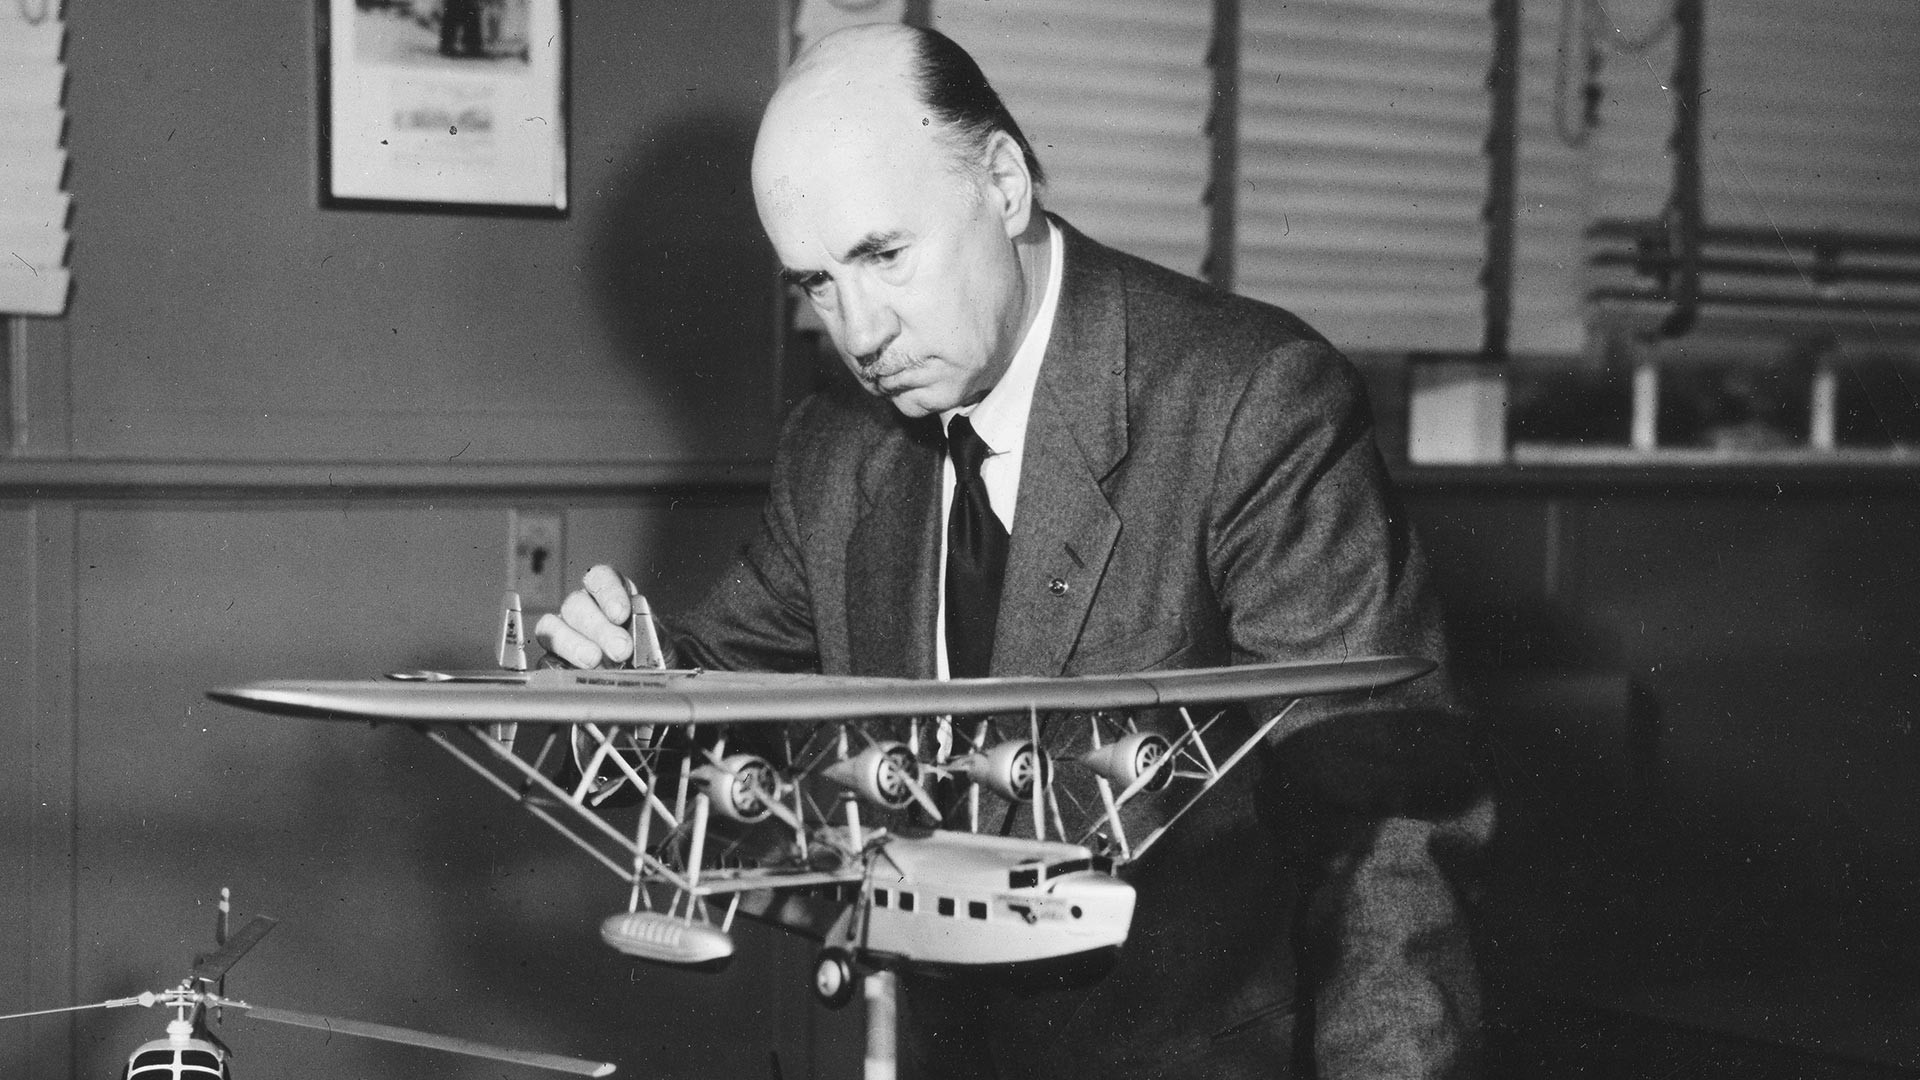 Igor I. Sikorski s maketom višemotornog aviona, sredina 1950-ih.
